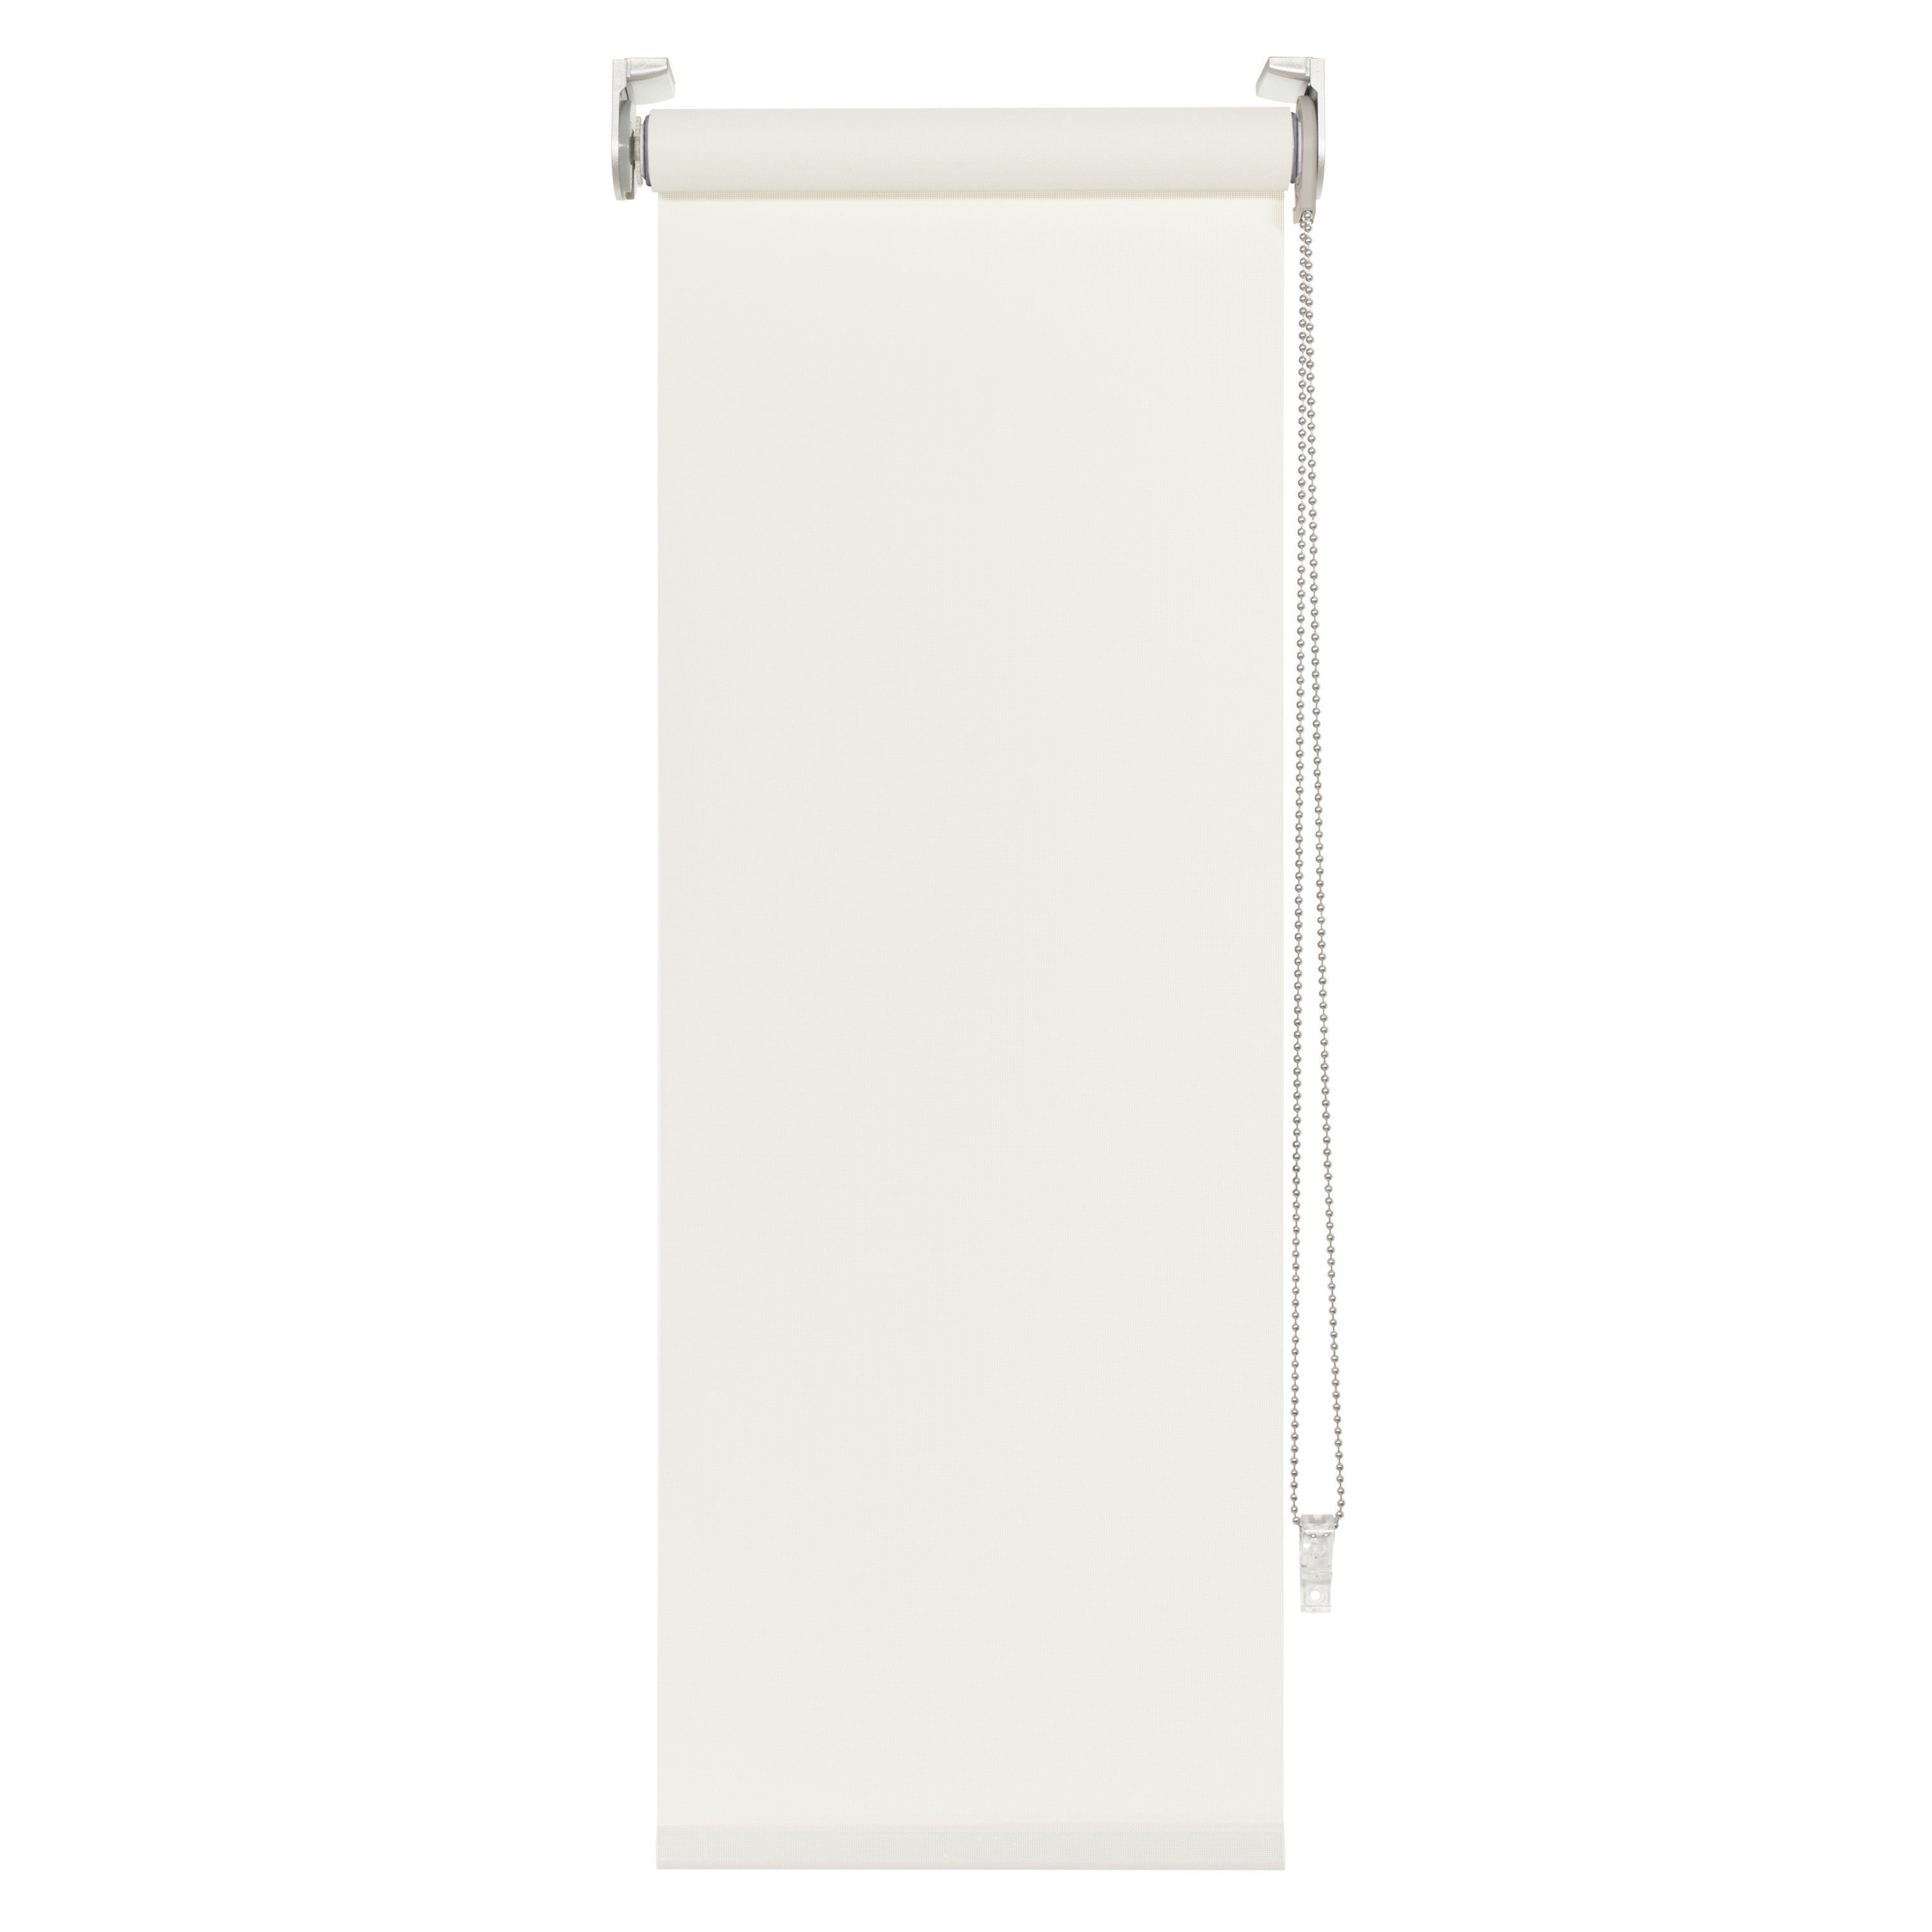 Tenda a rullo filtrante INSPIRE Brasilia bianco 120 x 250 cm - 2